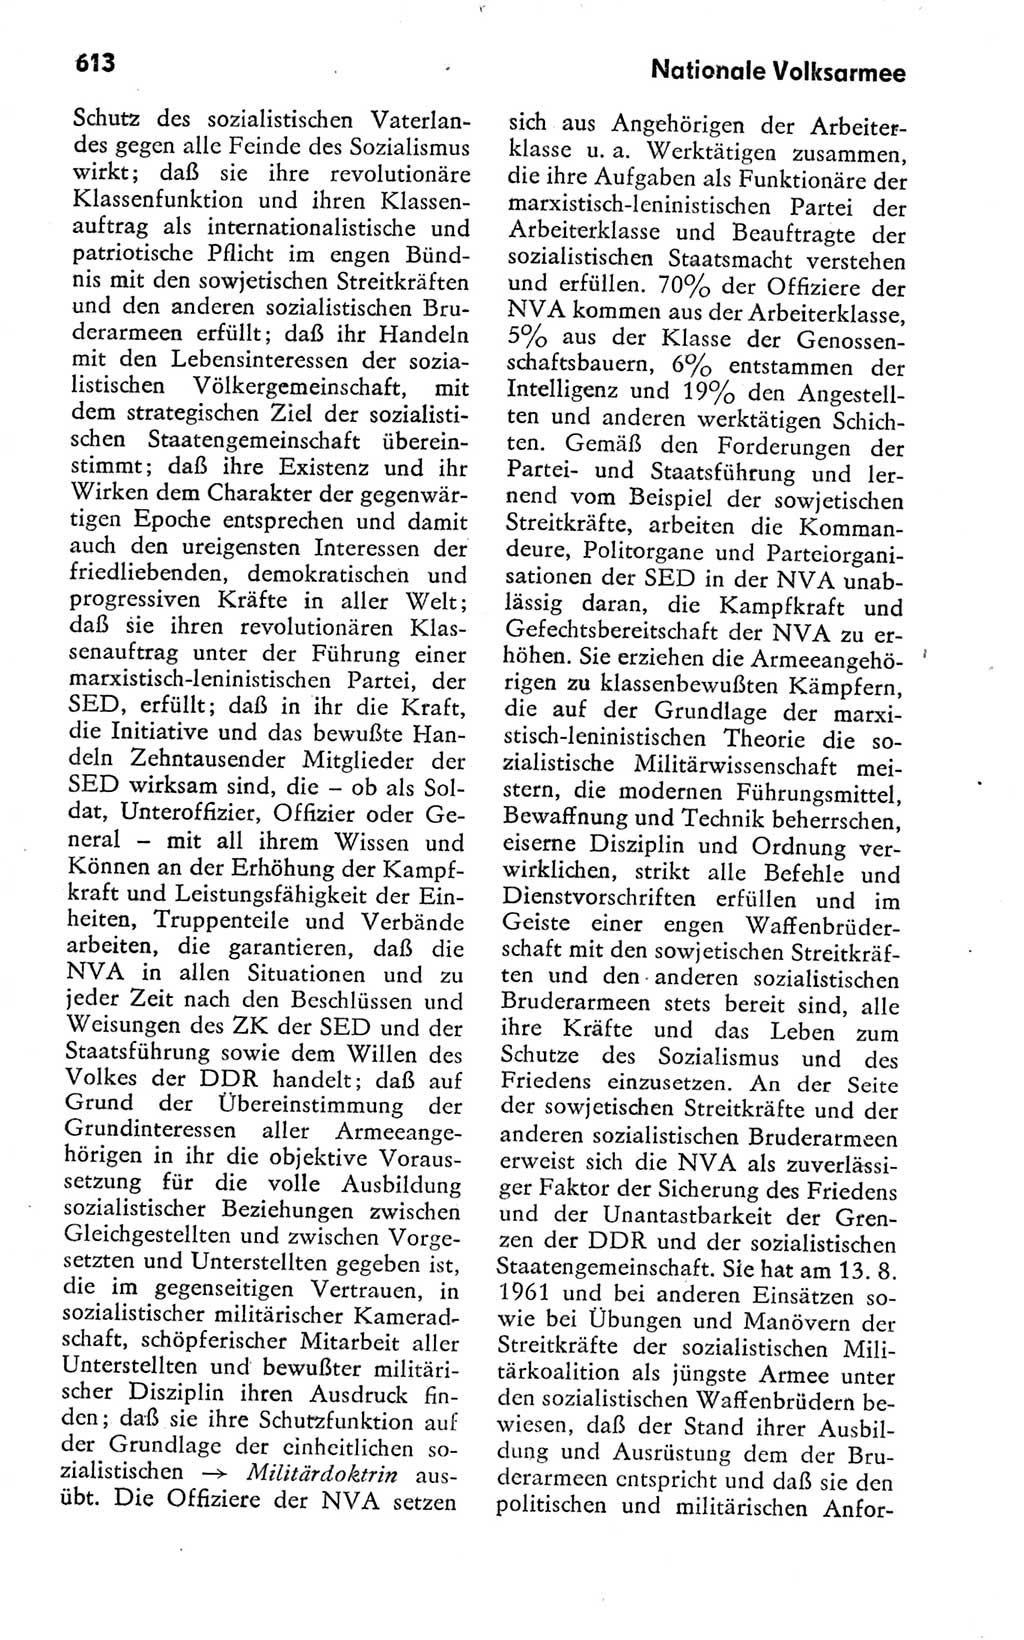 Kleines politisches Wörterbuch [Deutsche Demokratische Republik (DDR)] 1978, Seite 613 (Kl. pol. Wb. DDR 1978, S. 613)